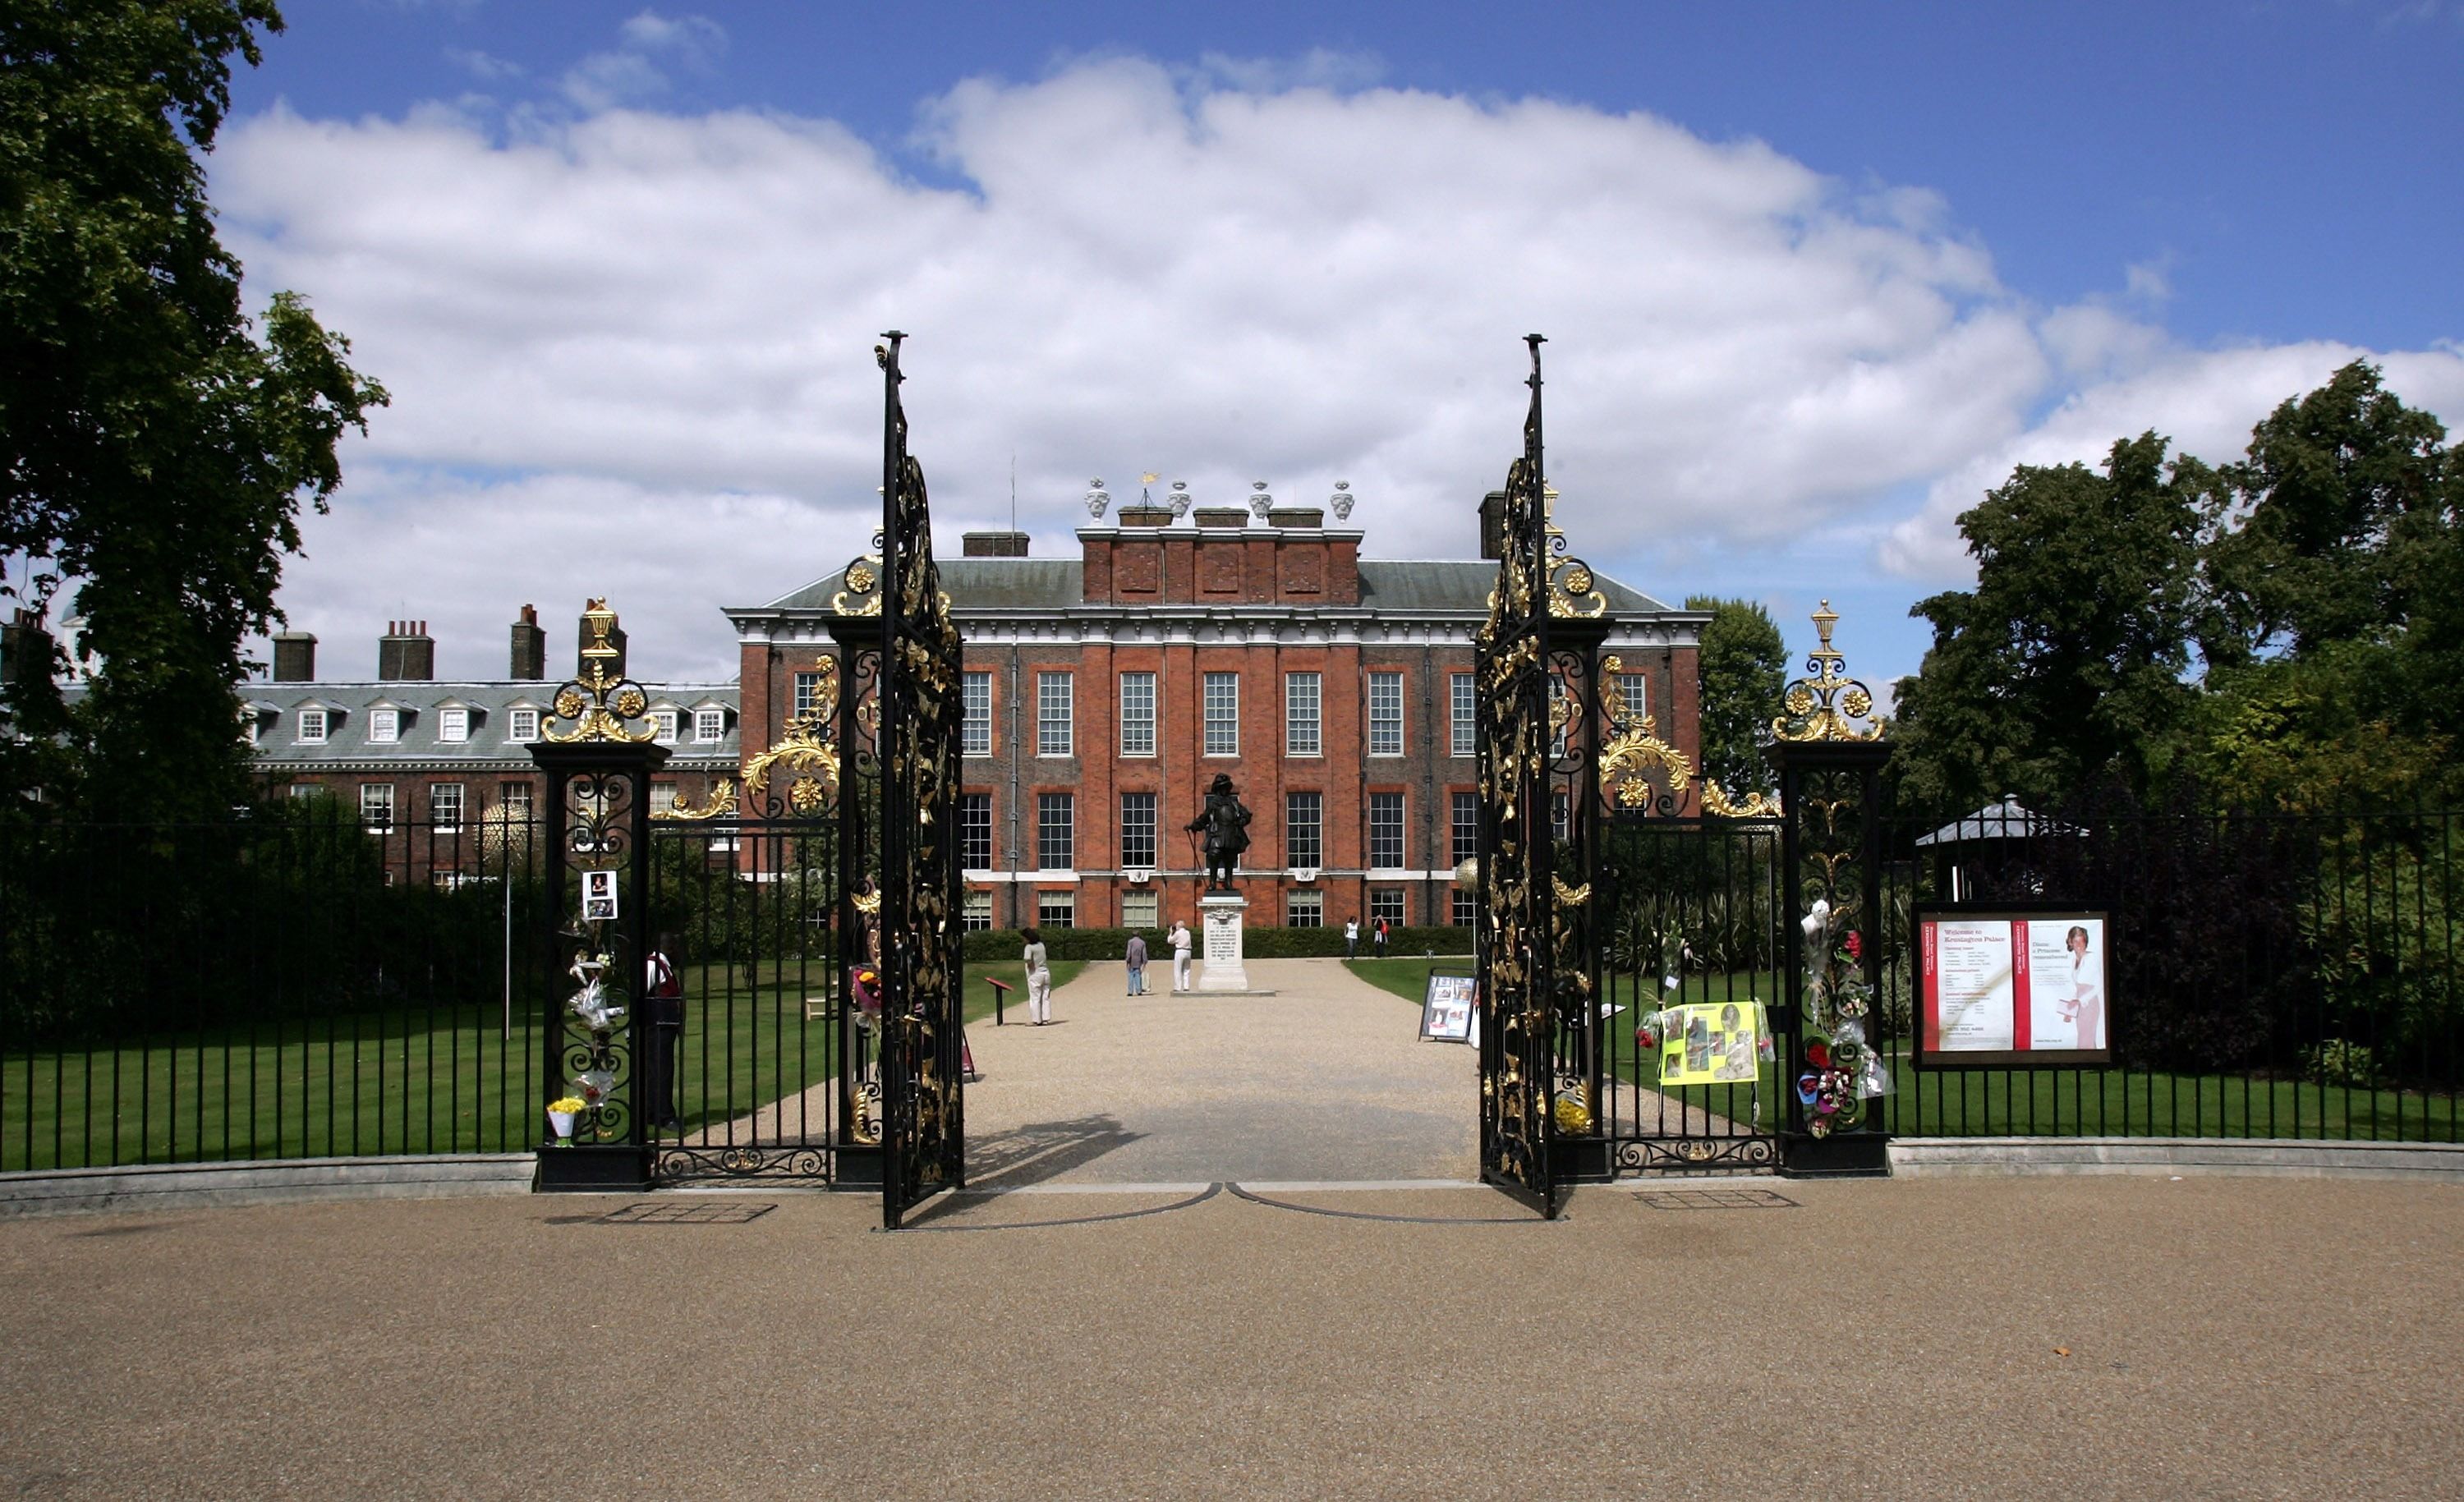 30 Royal British Family Homes - Beautiful Royal Family Homes